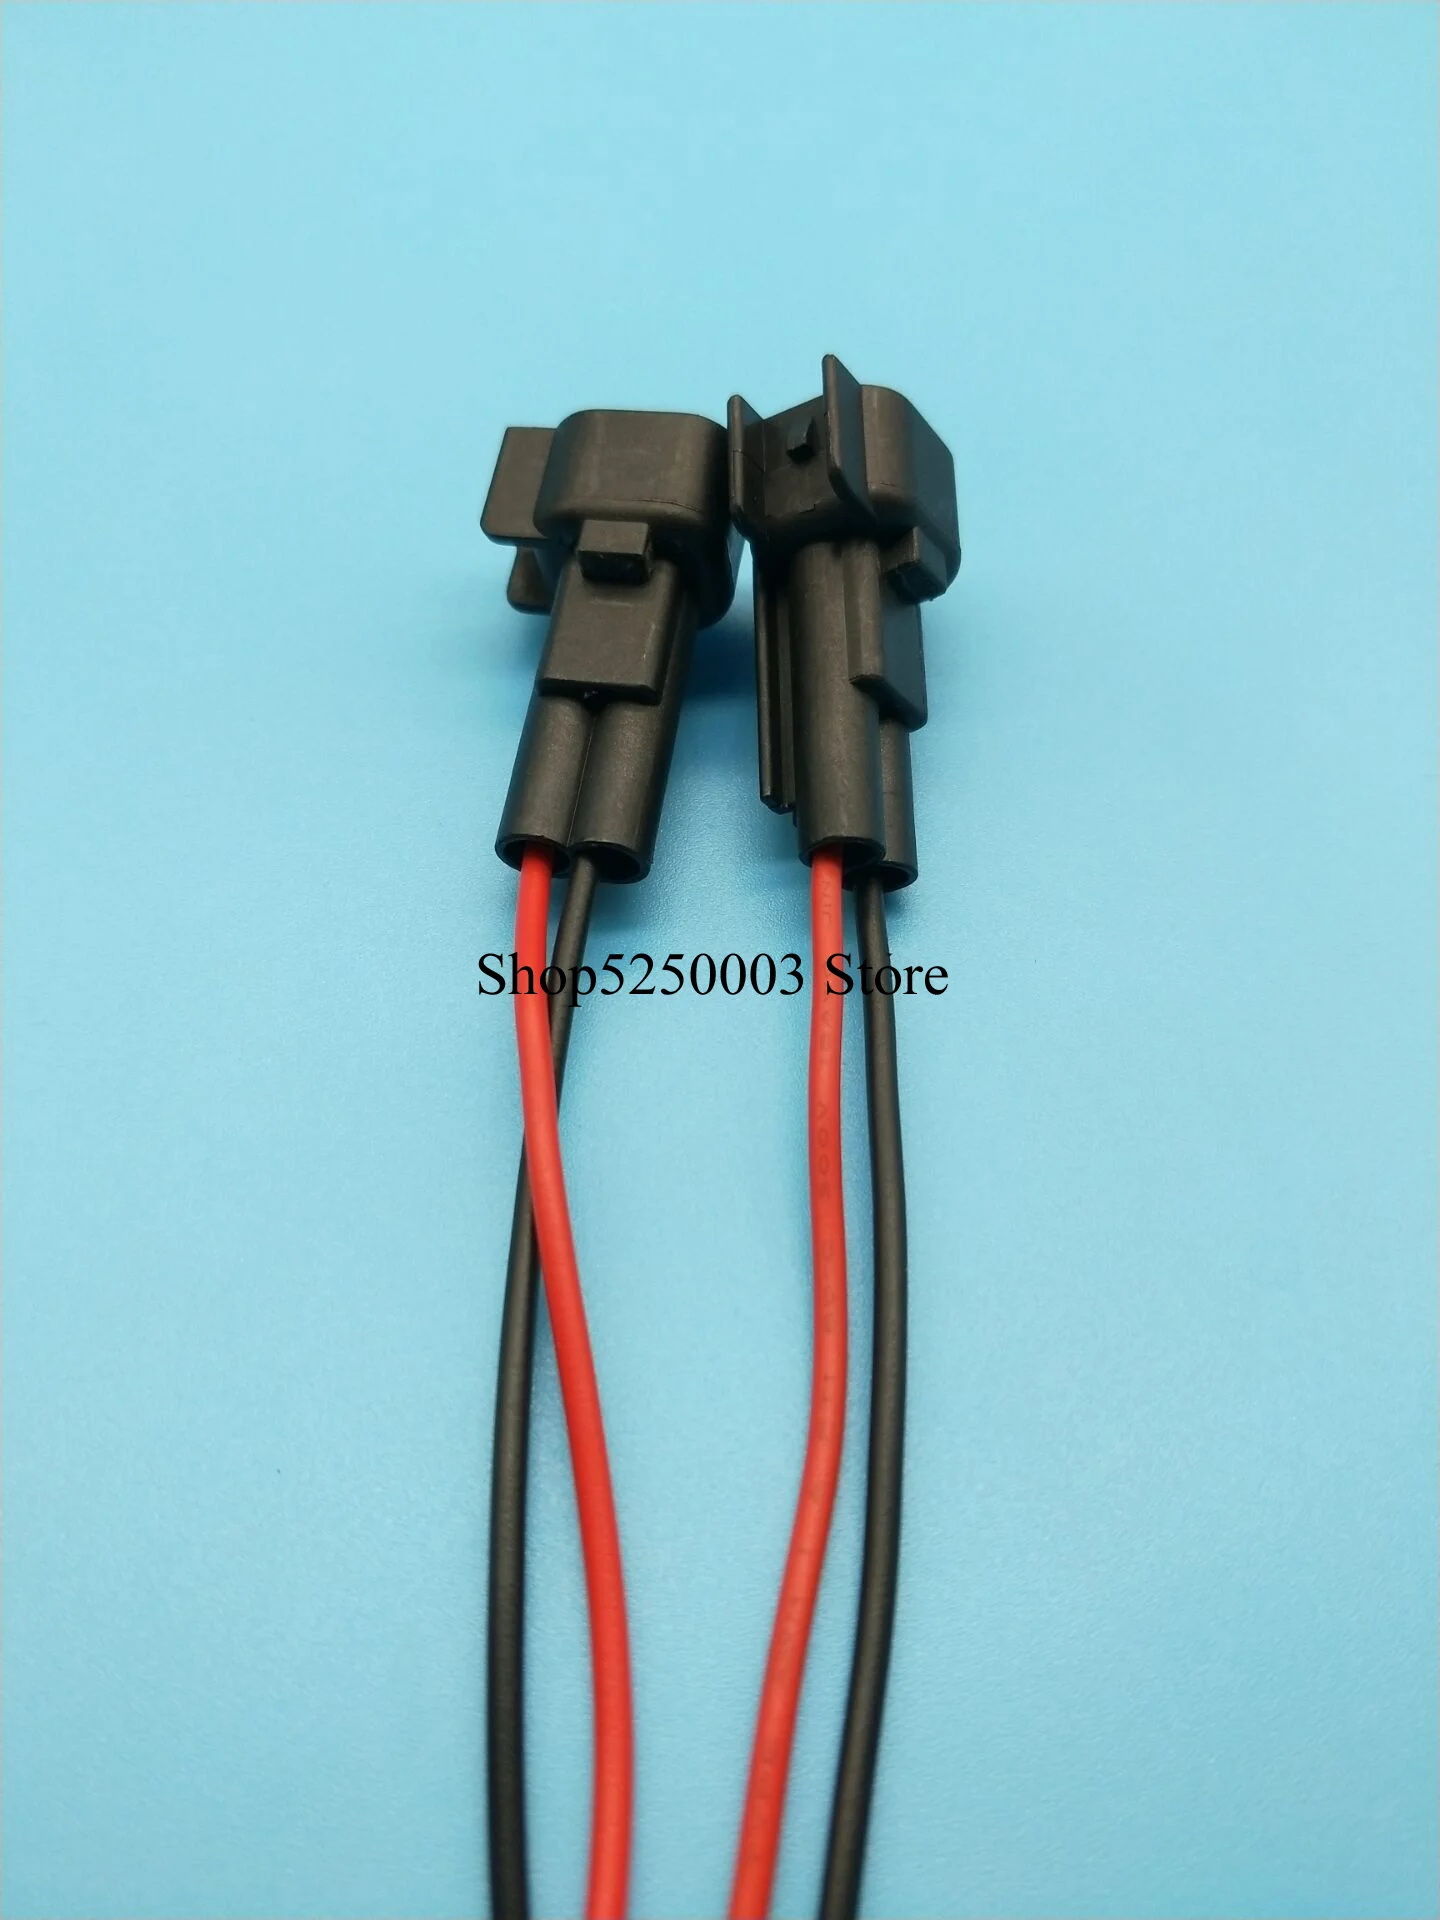 

2-контактный топливный коннектор инжектора EV6 Мужской Разъем с кабелем заглушка инжектора auto wire жгут